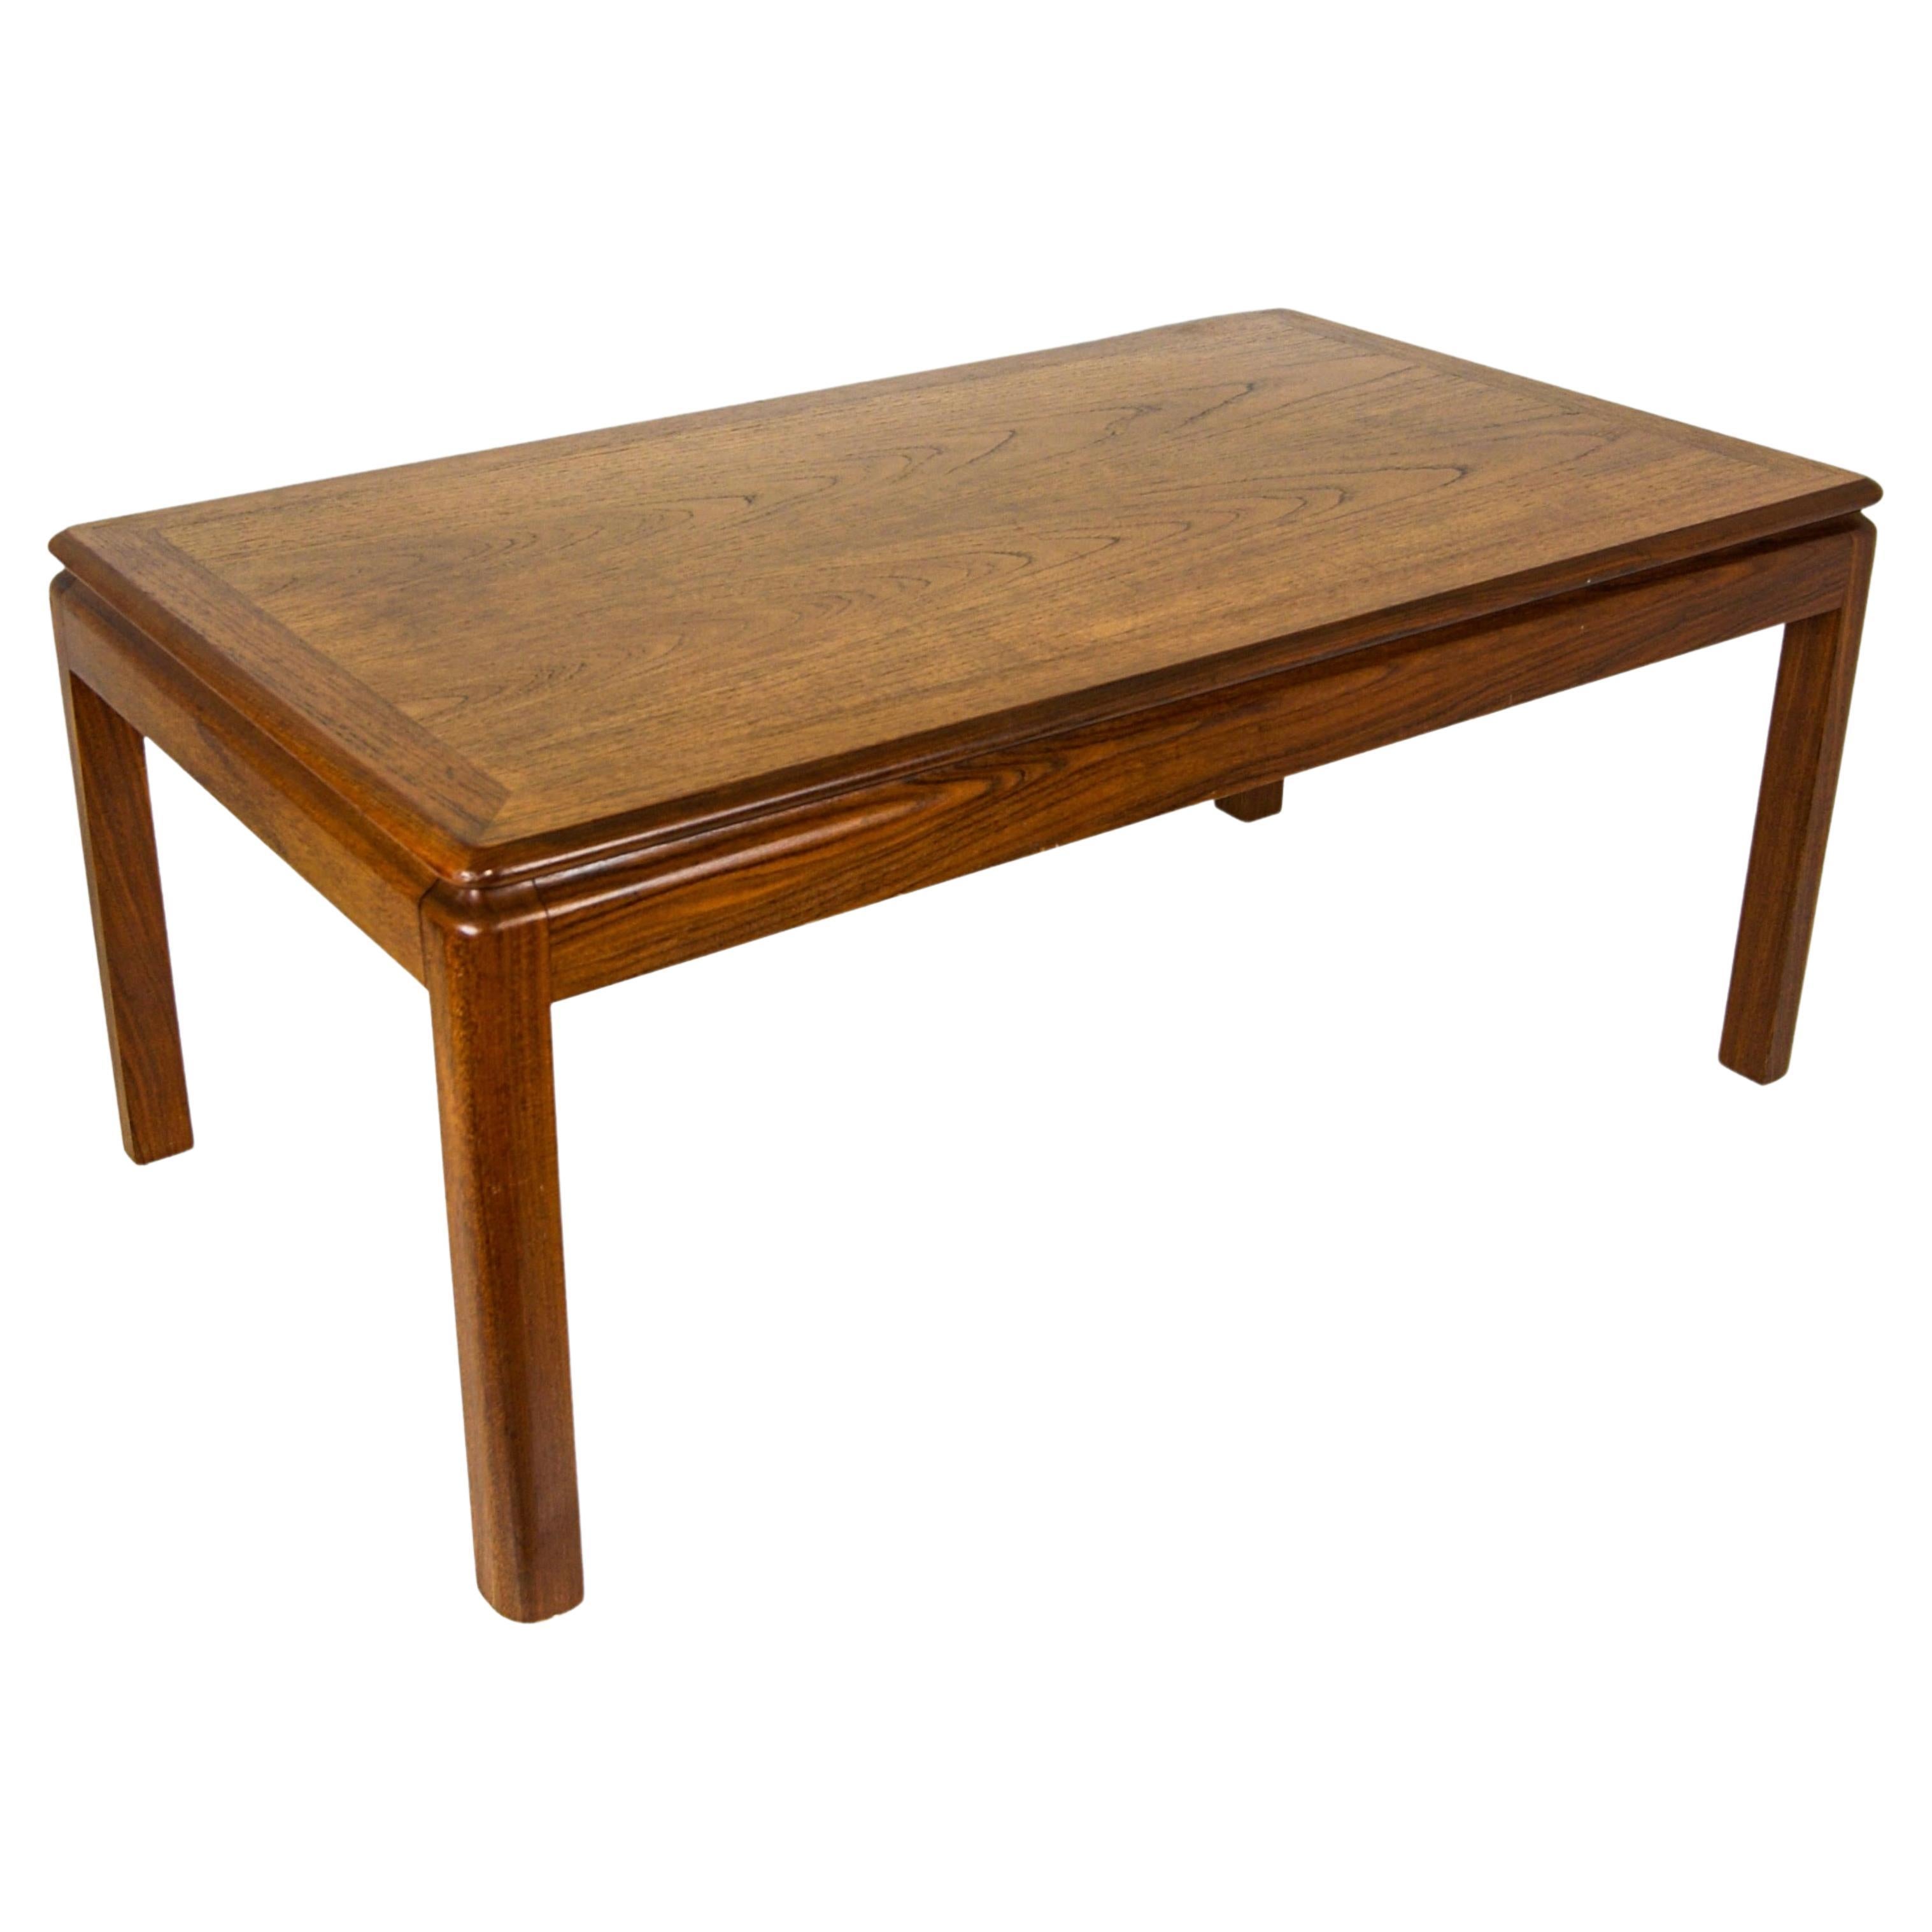 Vintage table basse en teck de fabrication britannique par G Pan.
 Table basse minimaliste en teck massif avec une belle patine du grain du bois.
Table basse de grande taille, solide et résistante.
Labellisé 